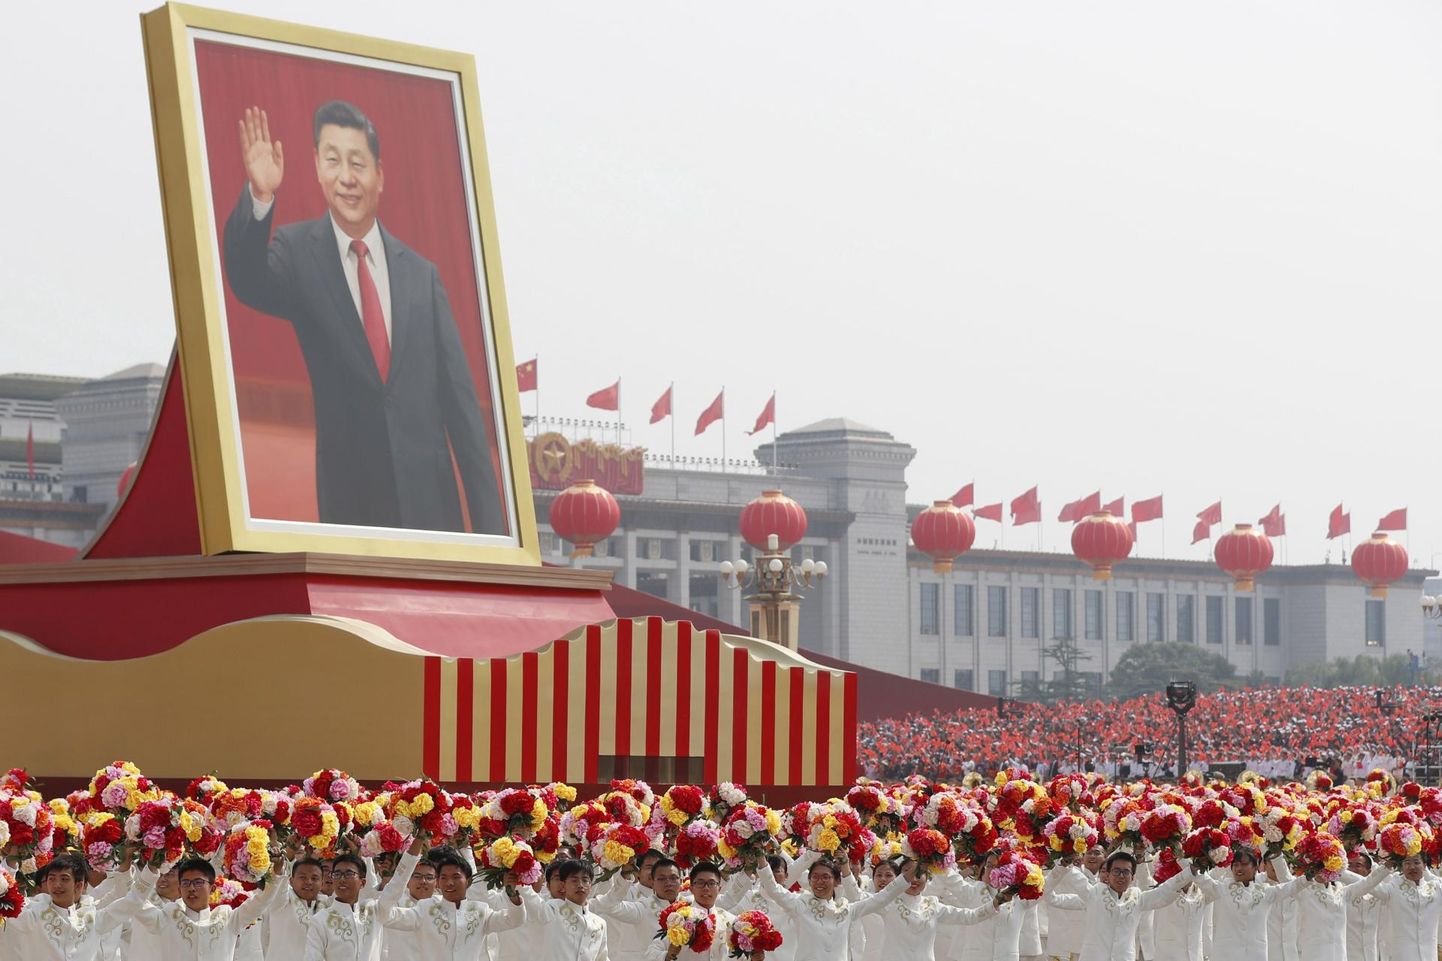 Hiina Rahvavabariigi 70. aastapäeva paraadil osalejad kandmas president Xi Jinpingi hiiglaslikku pilti. Viimastel aastatel on üha enam praegust riigijuhti propagandateostes hakatud esile tõstma kui riigi ajaloo edukaimat liidrit. 